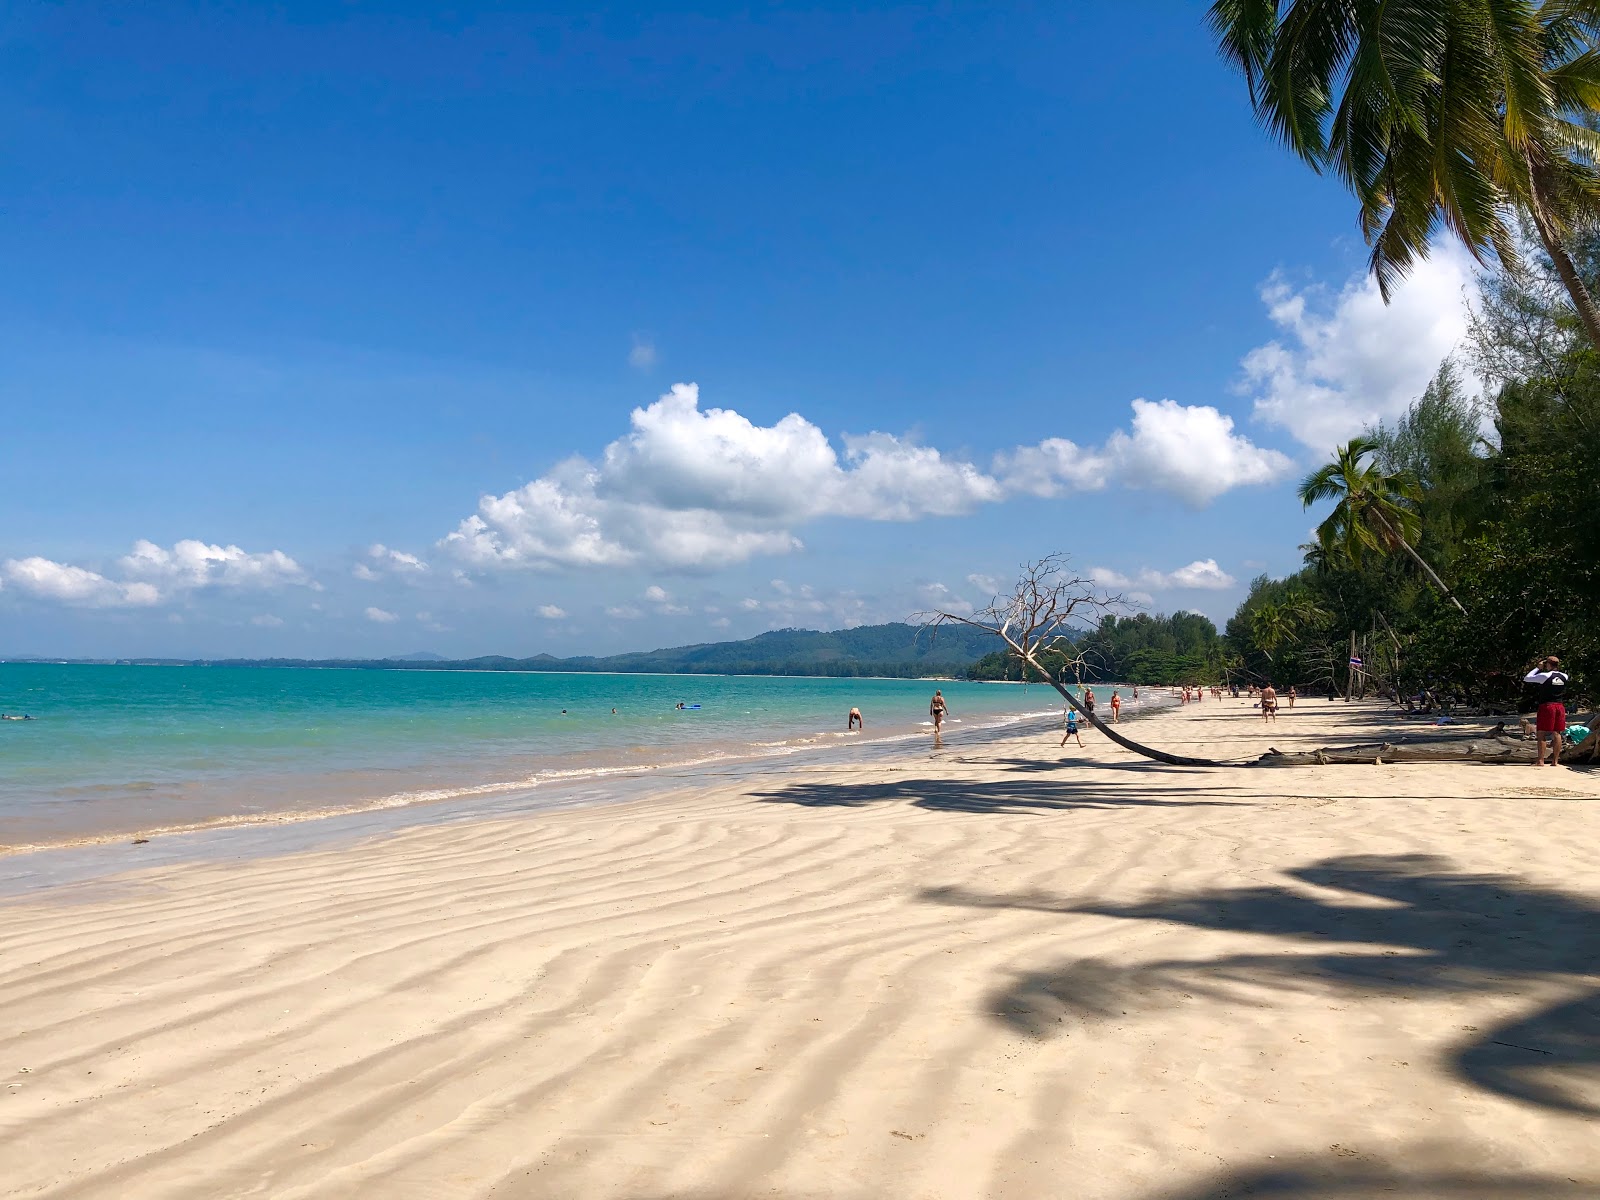 Coconut Plajı'in fotoğrafı parlak ince kum yüzey ile